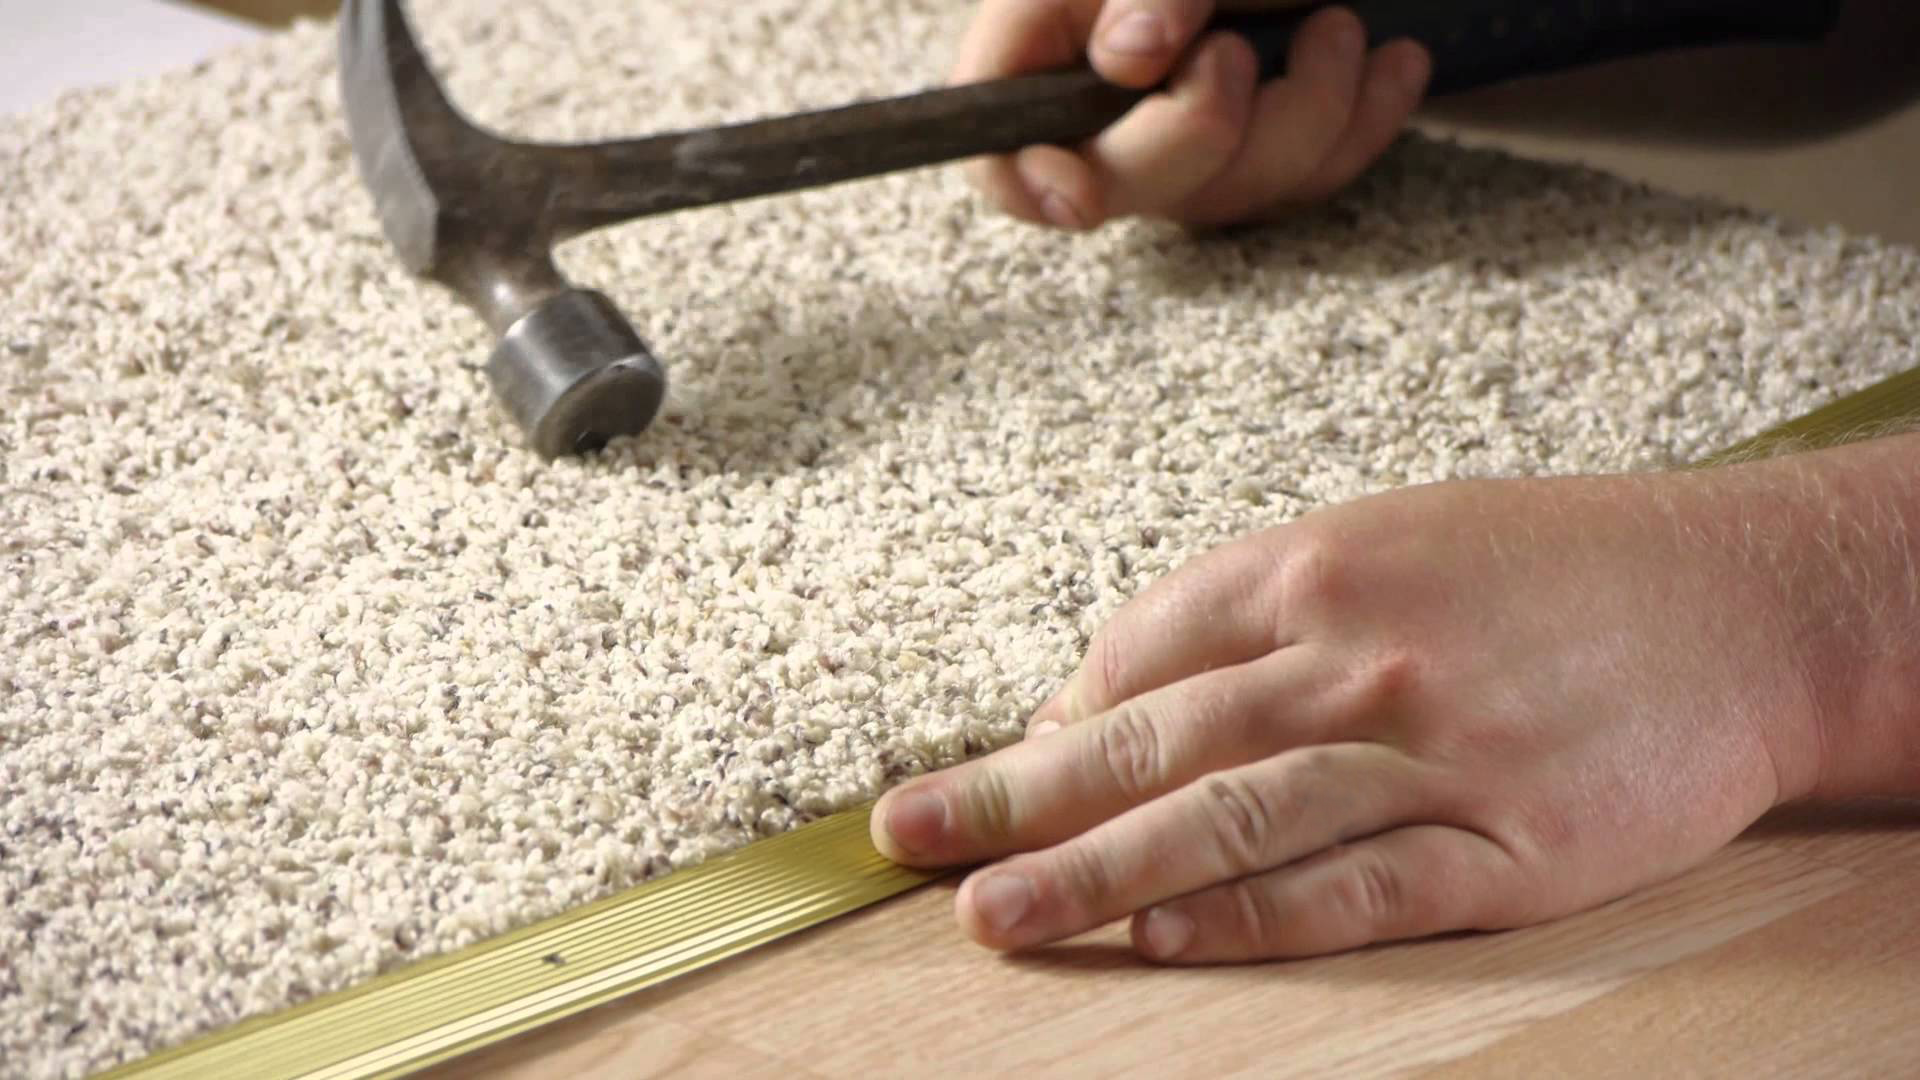 Как стелить ковролин своими руками: различные методы, советы по укладке